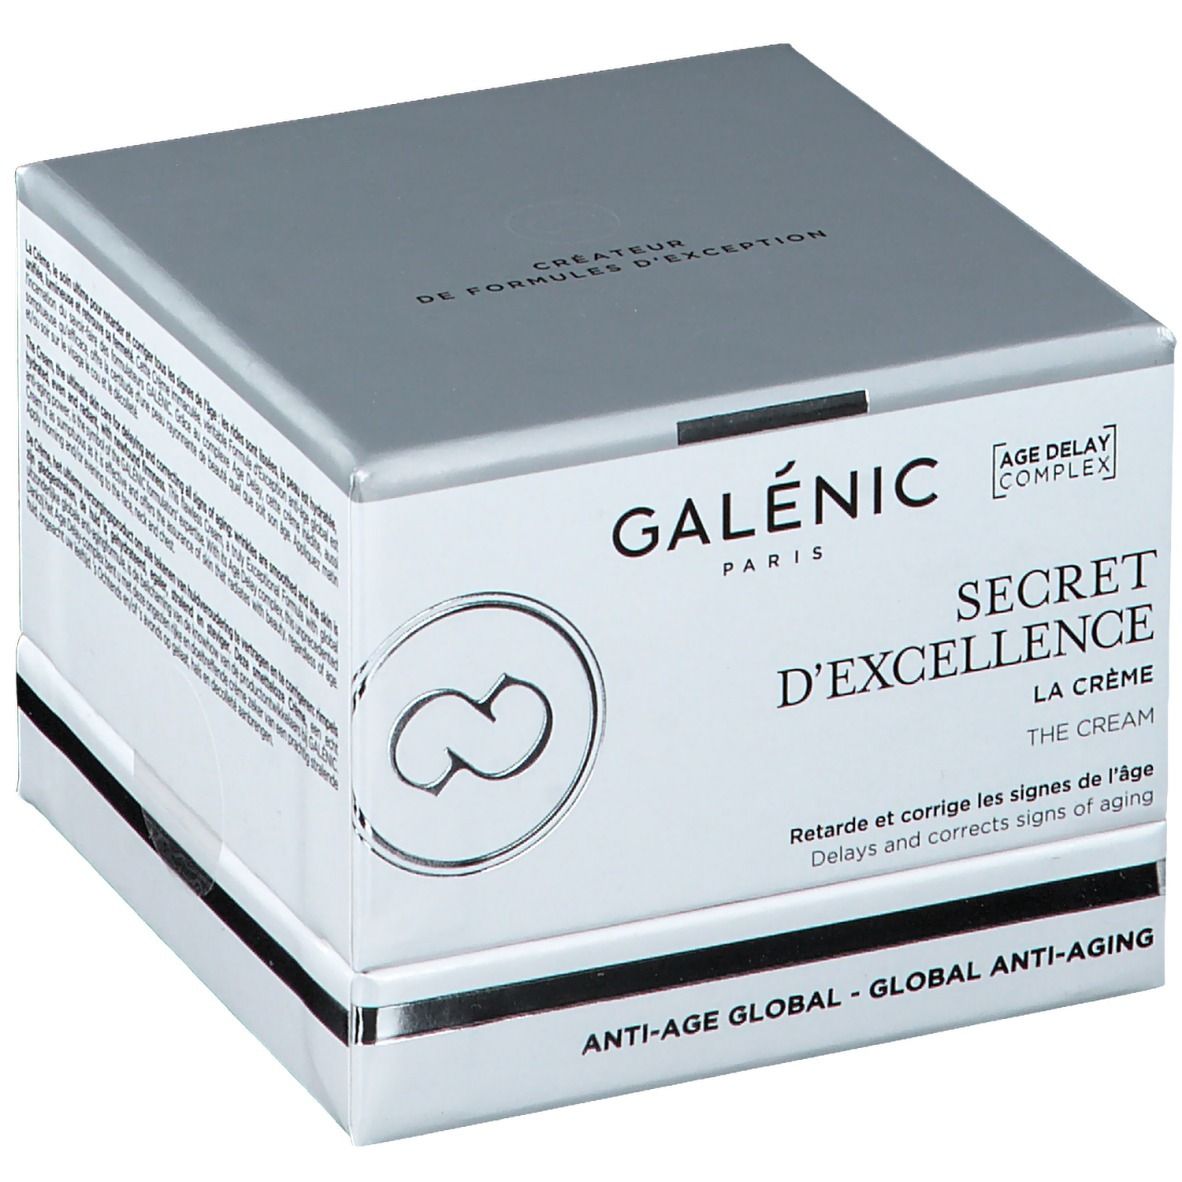 GALENIC COSMETICS LABORATORY Galénic Secret D'excellence La Crème